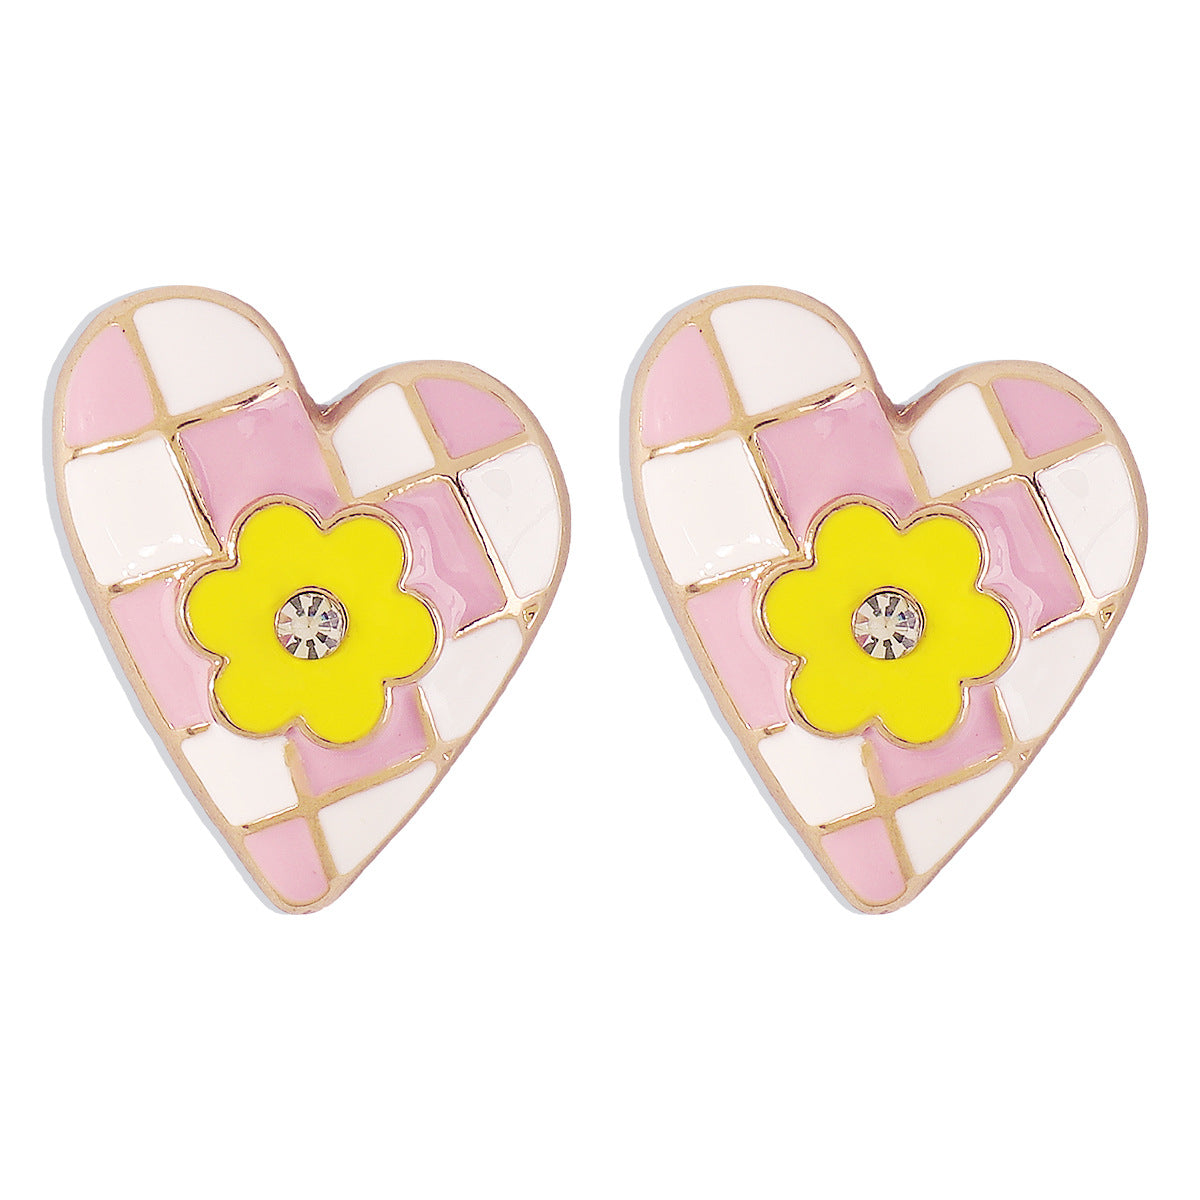 Clear Cubic Zirconia & Pink Flower Heart Stud Earrings